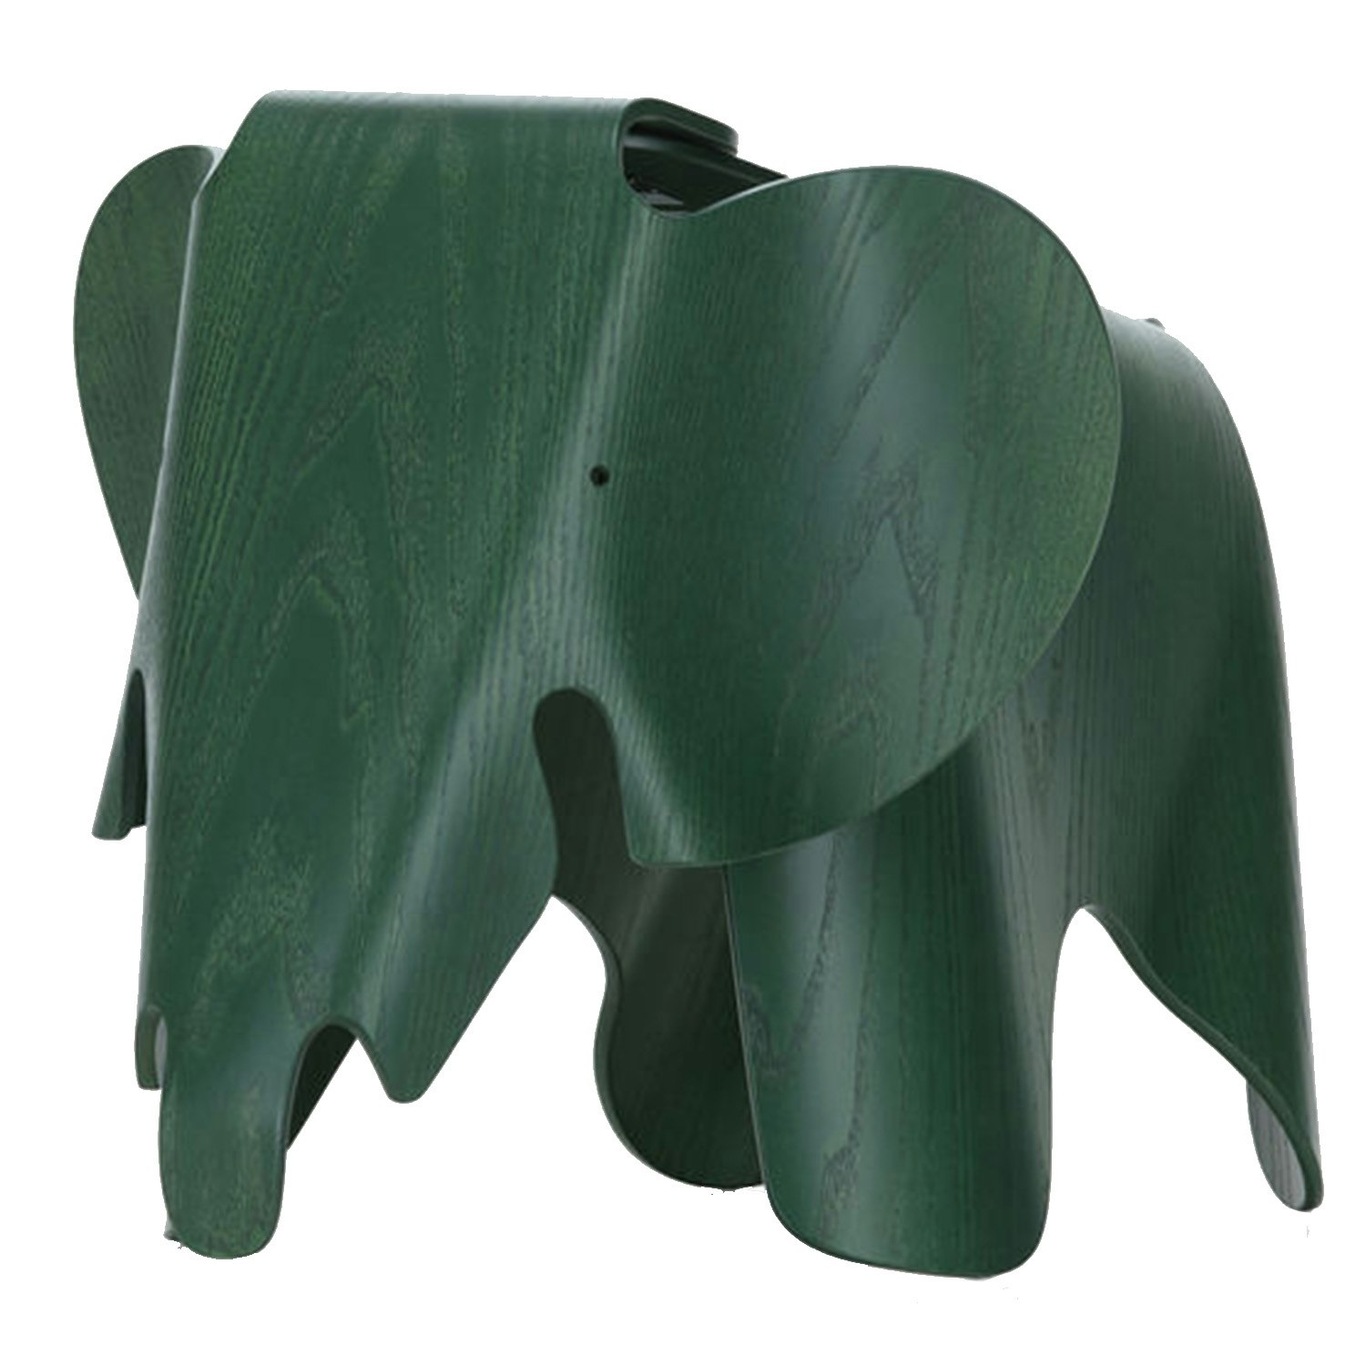 Eames Elefant Kryssfiner, Eames Special Collection, Mørkegrønn